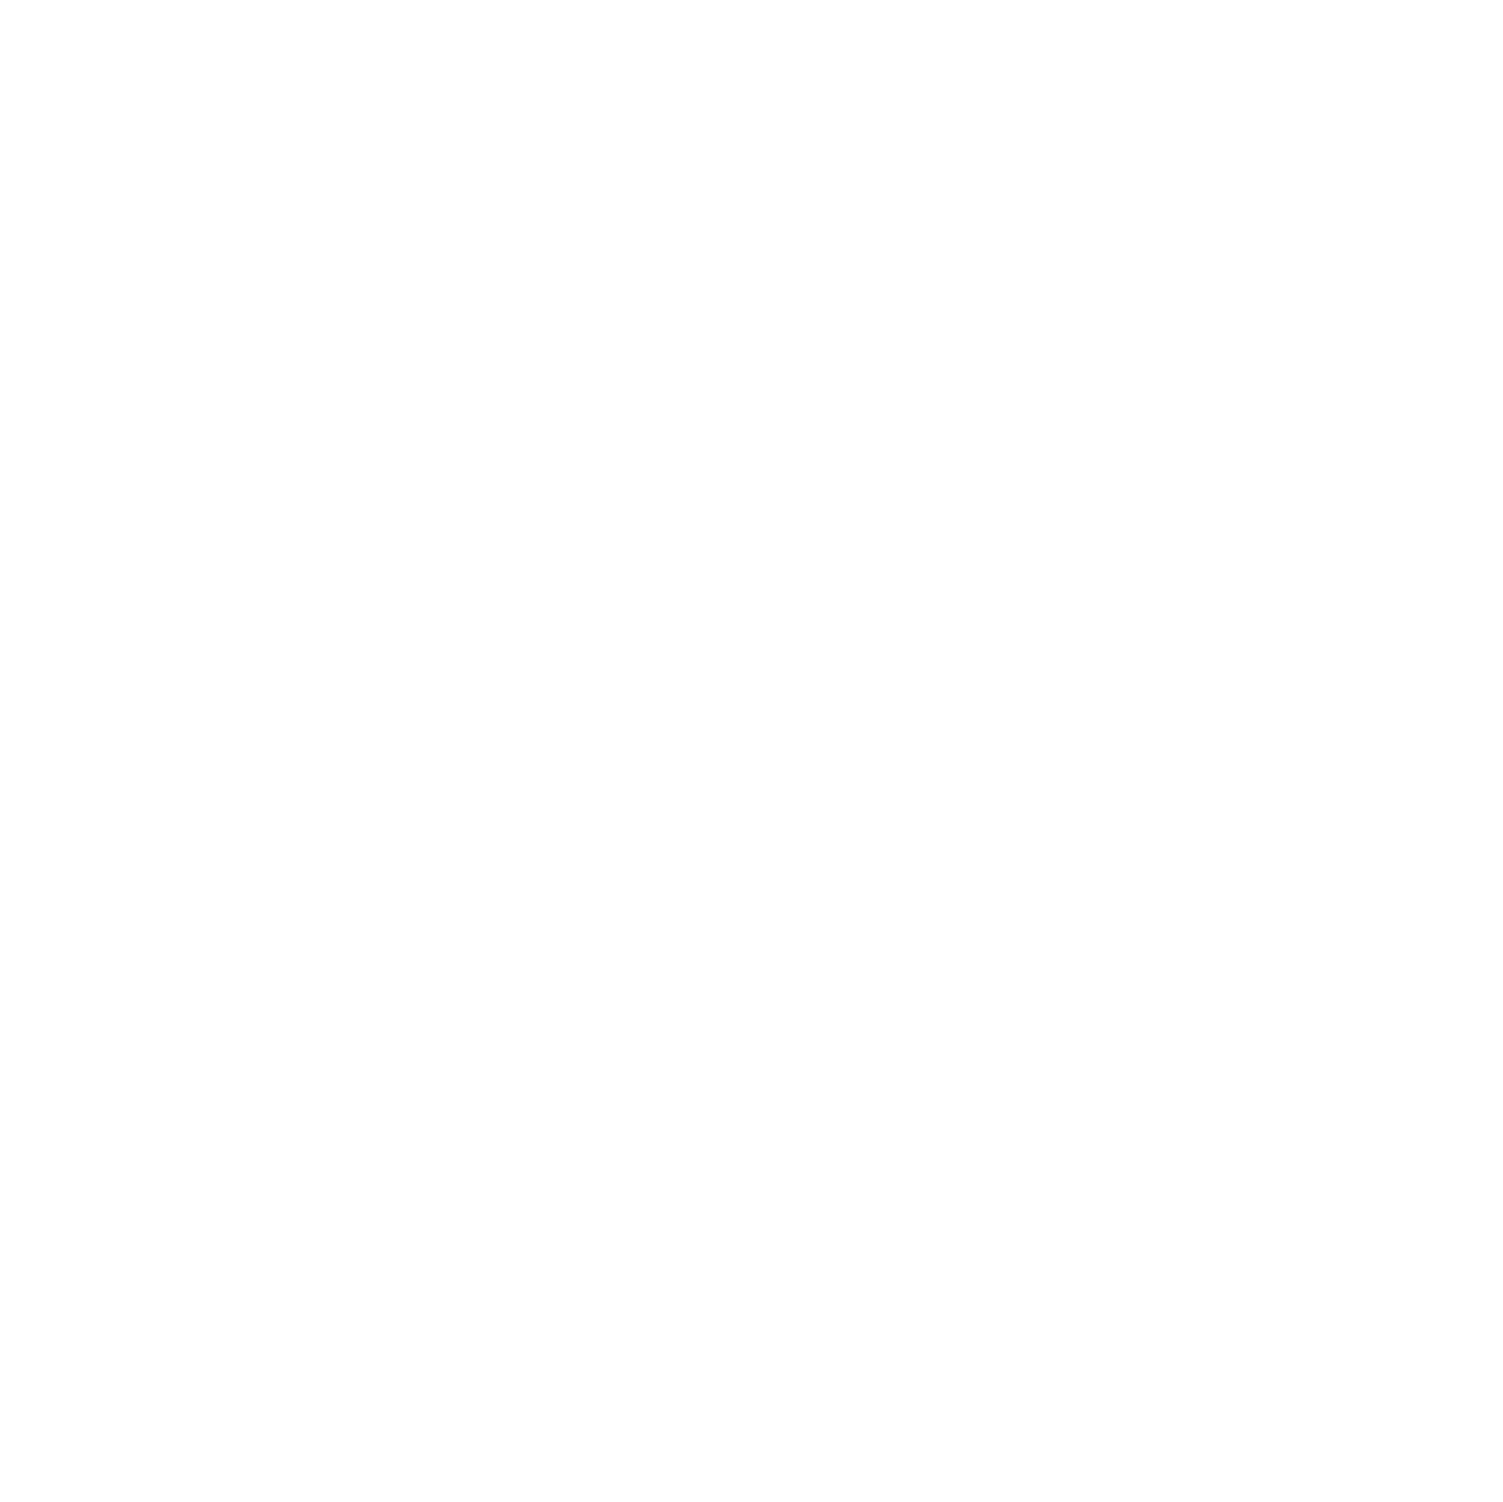 abrdn ETF logo for dark backgrounds (transparent PNG)